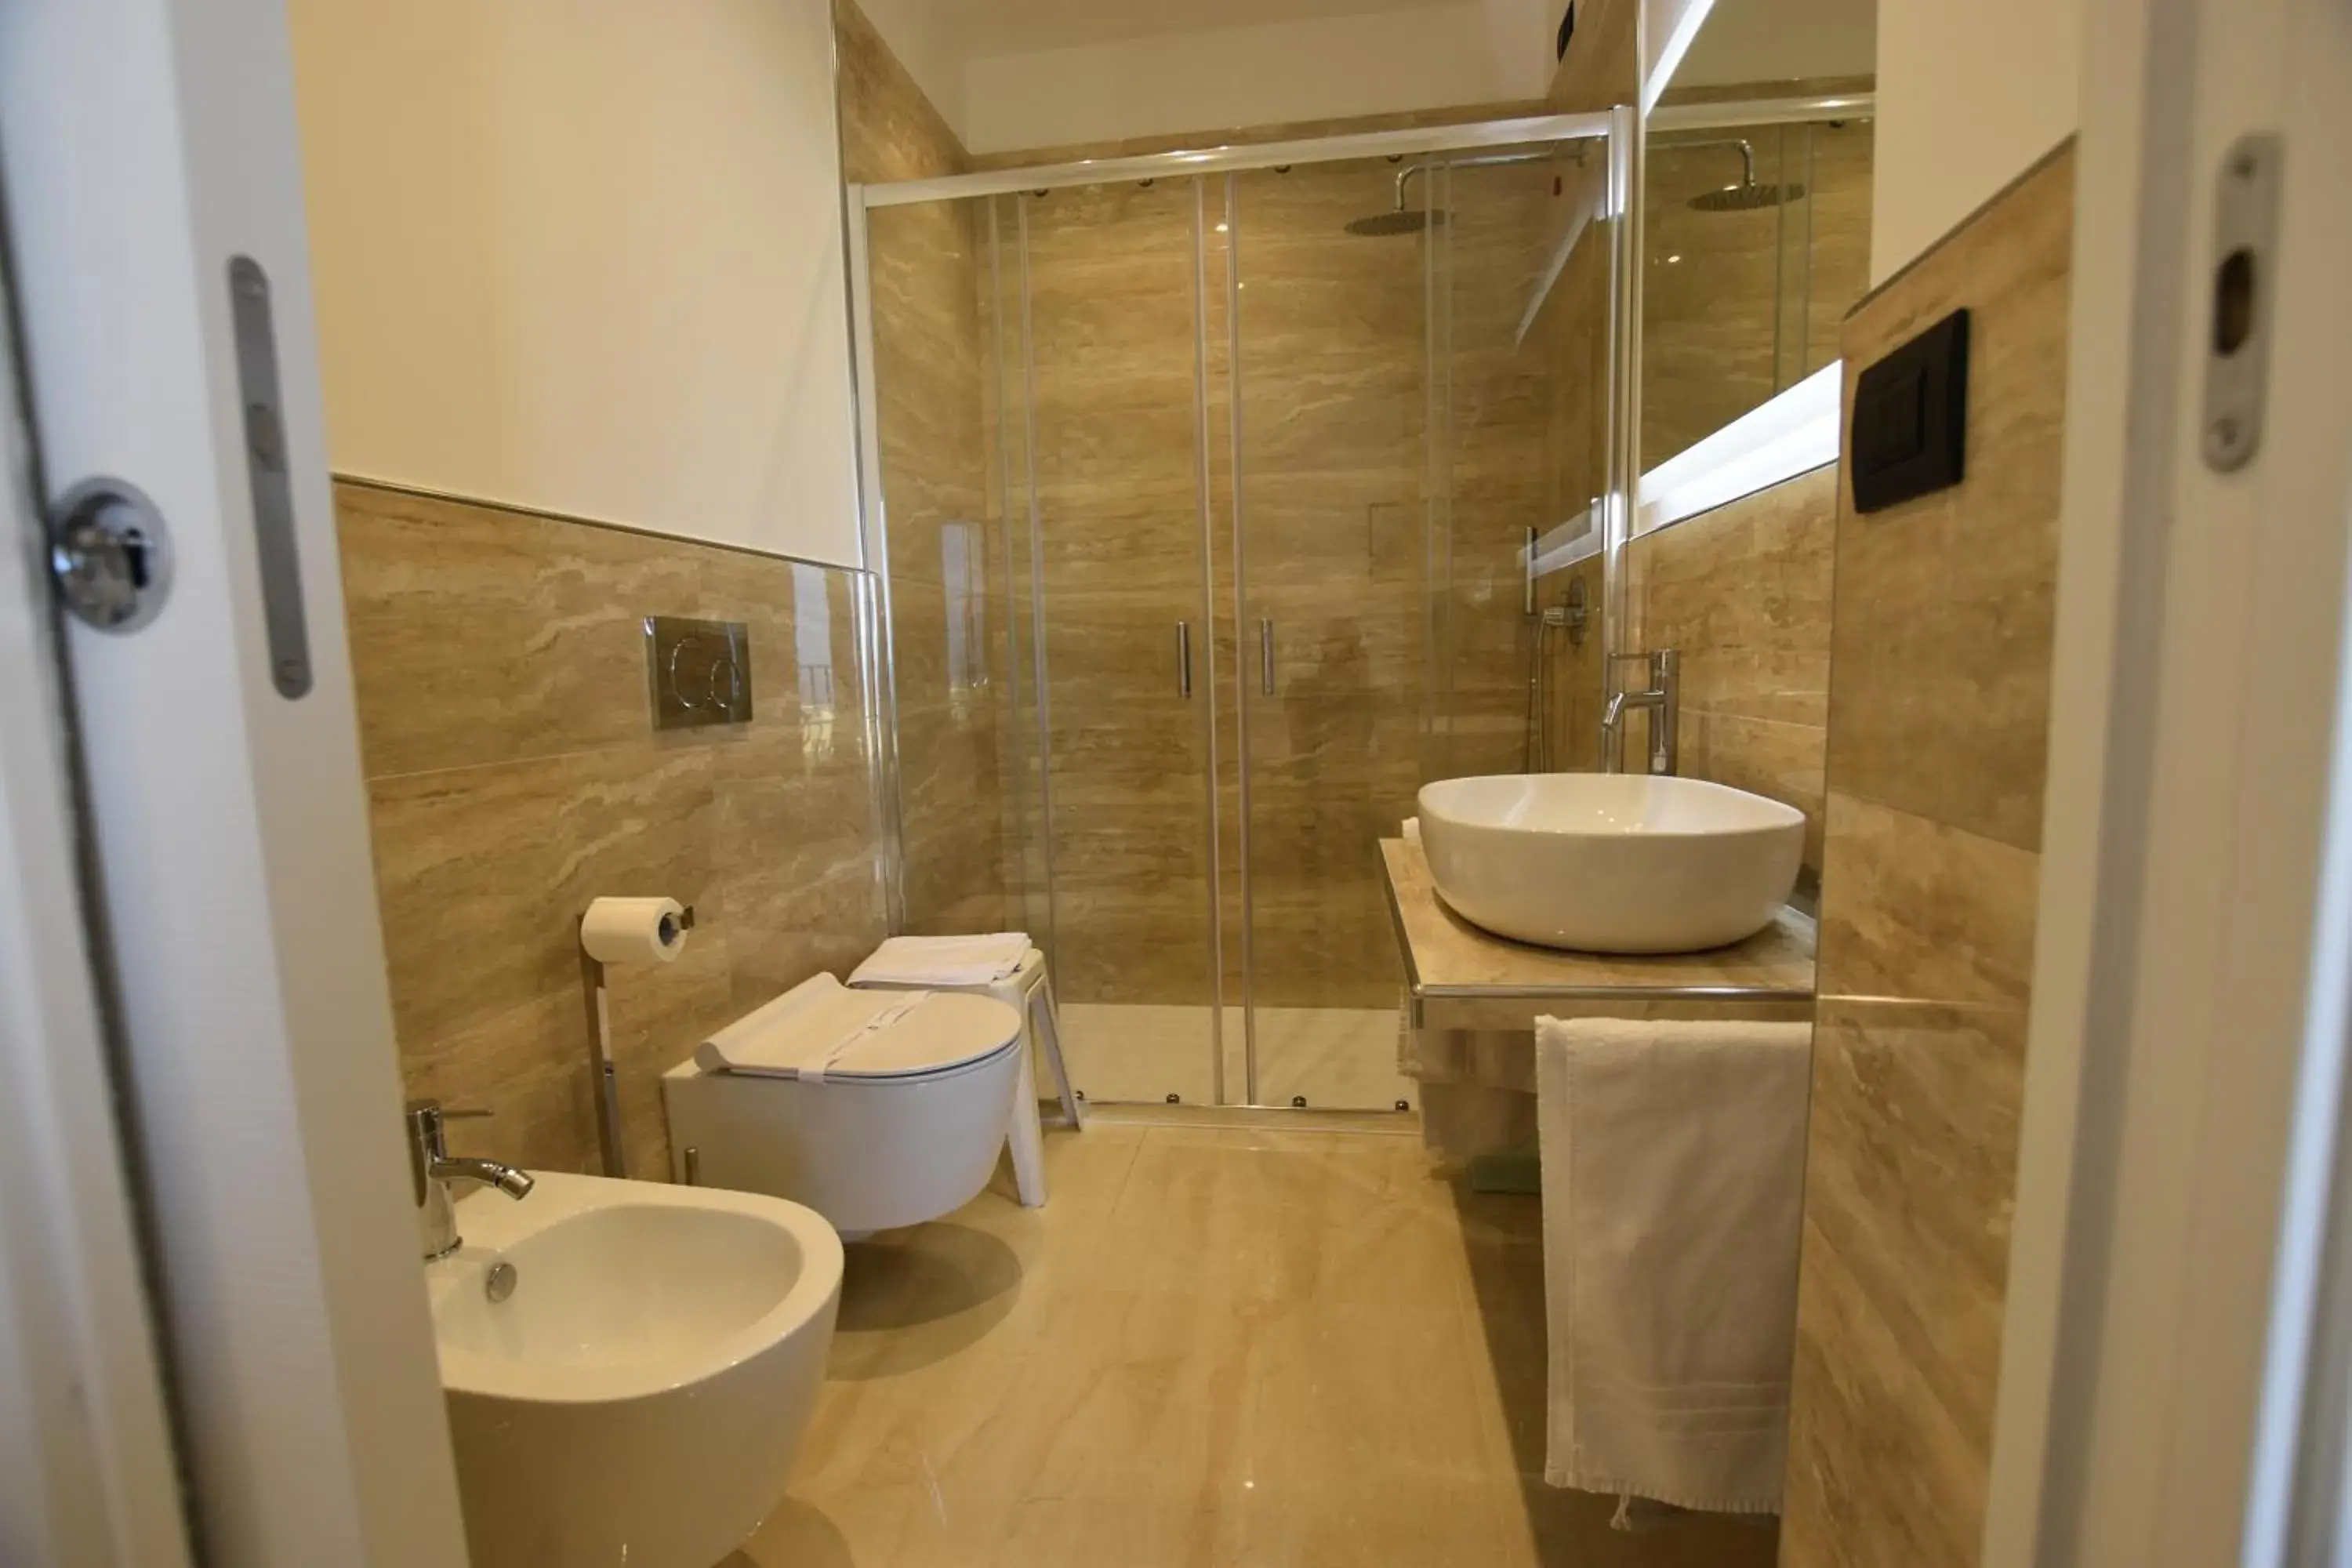 Bathroom in Hotel Condor